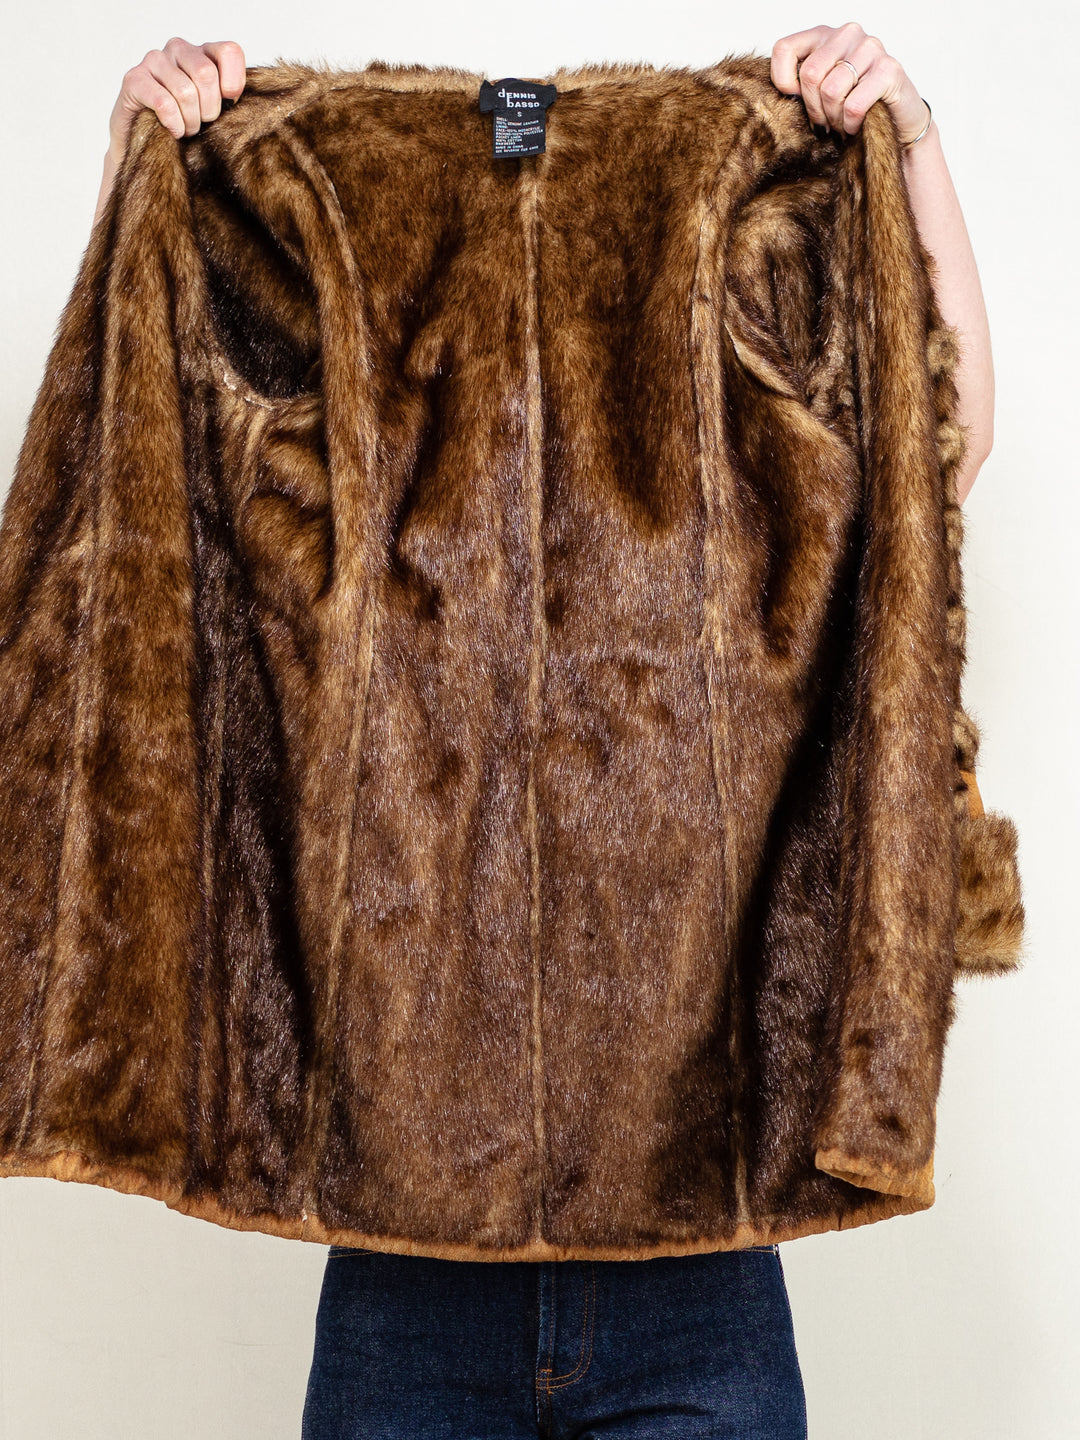 DENNIS BASSO Coat vintage 90's designer suede leather sherpa lined coat hooded faux shearling coat women designer high fashion size large